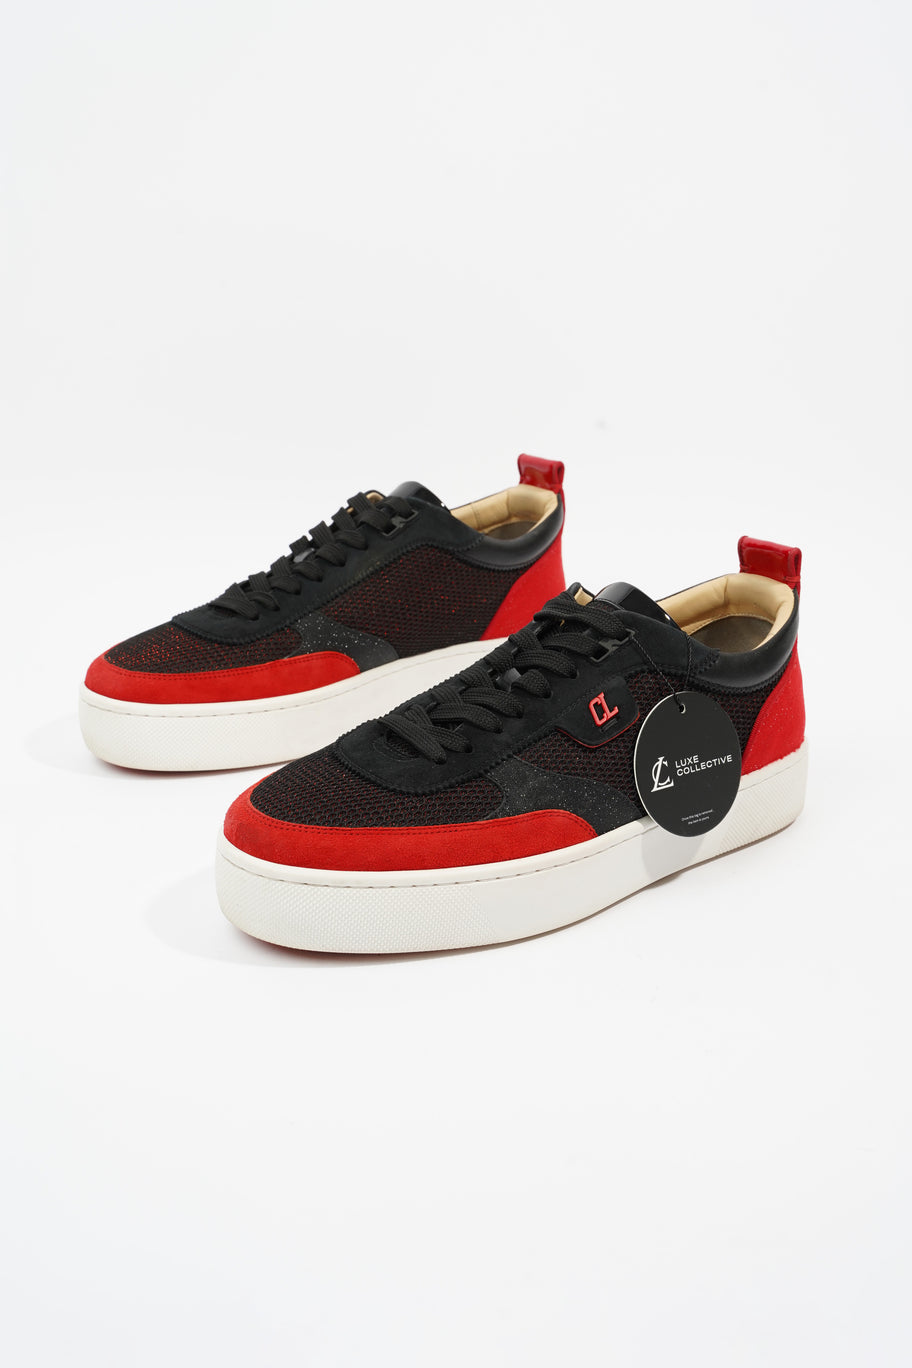 Happyrui Sneakers Black / Red Mesh EU 42.5 UK 8.5 Image 9